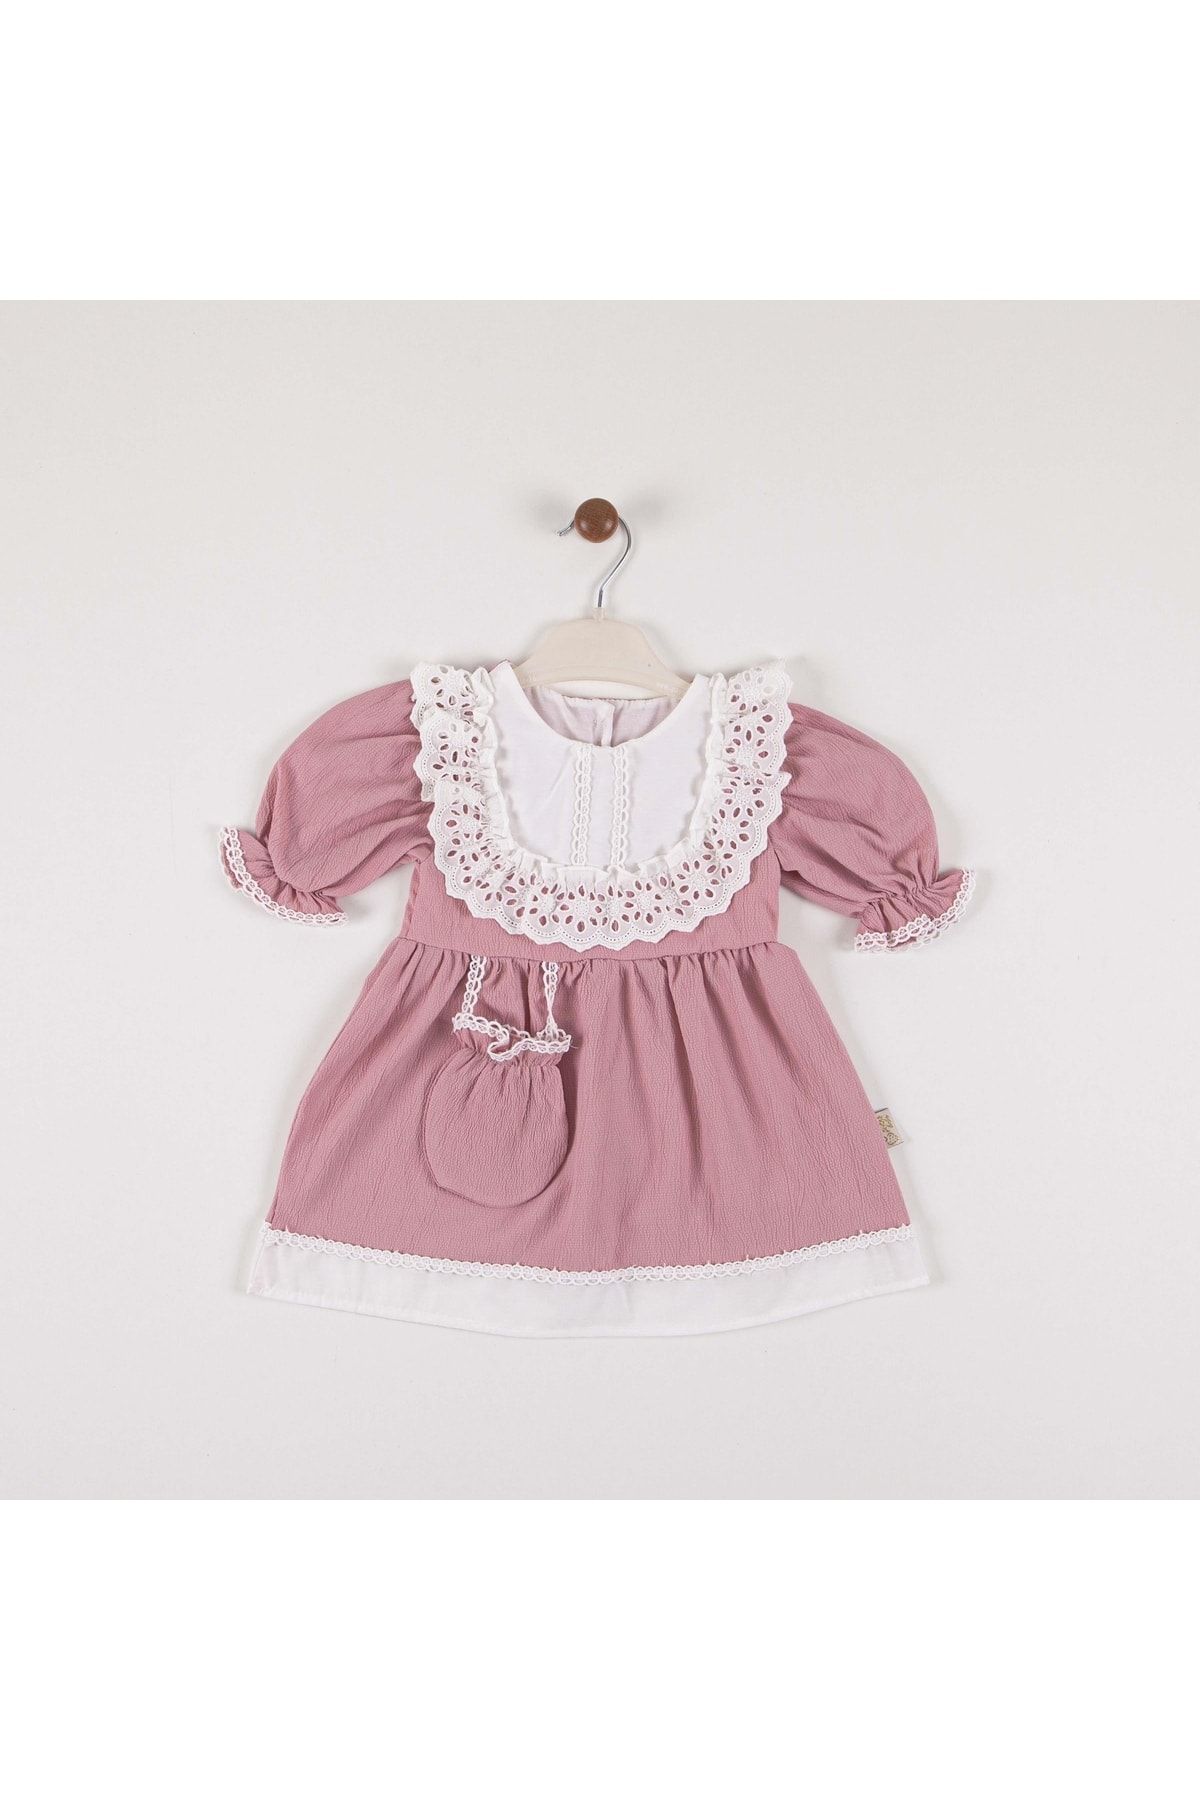 MİNİKO KİDS Kız Bebek Dantel Detaylı Cüzdan Modelli Pamuk Elbise